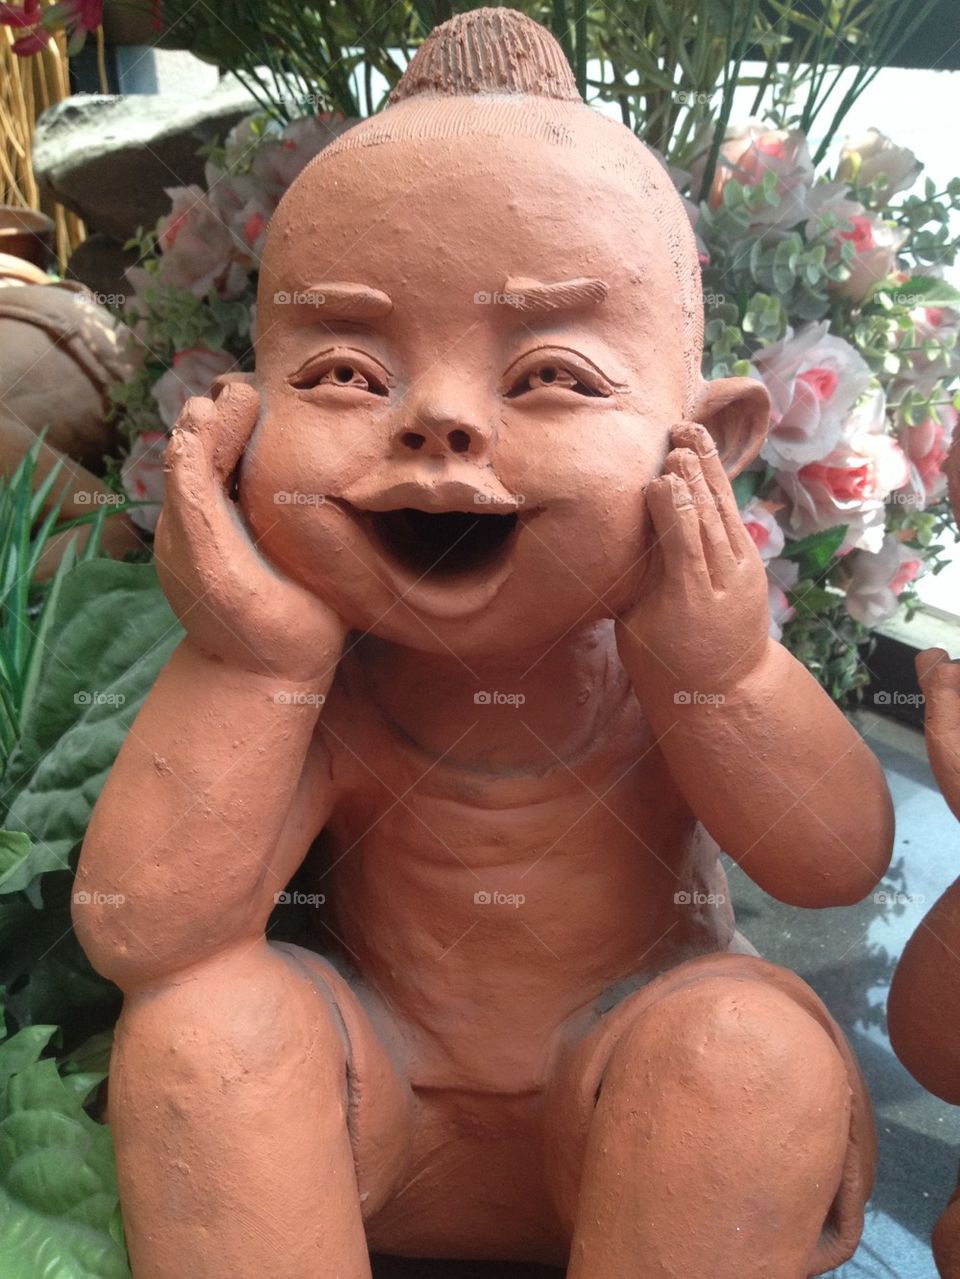 Child smile statue